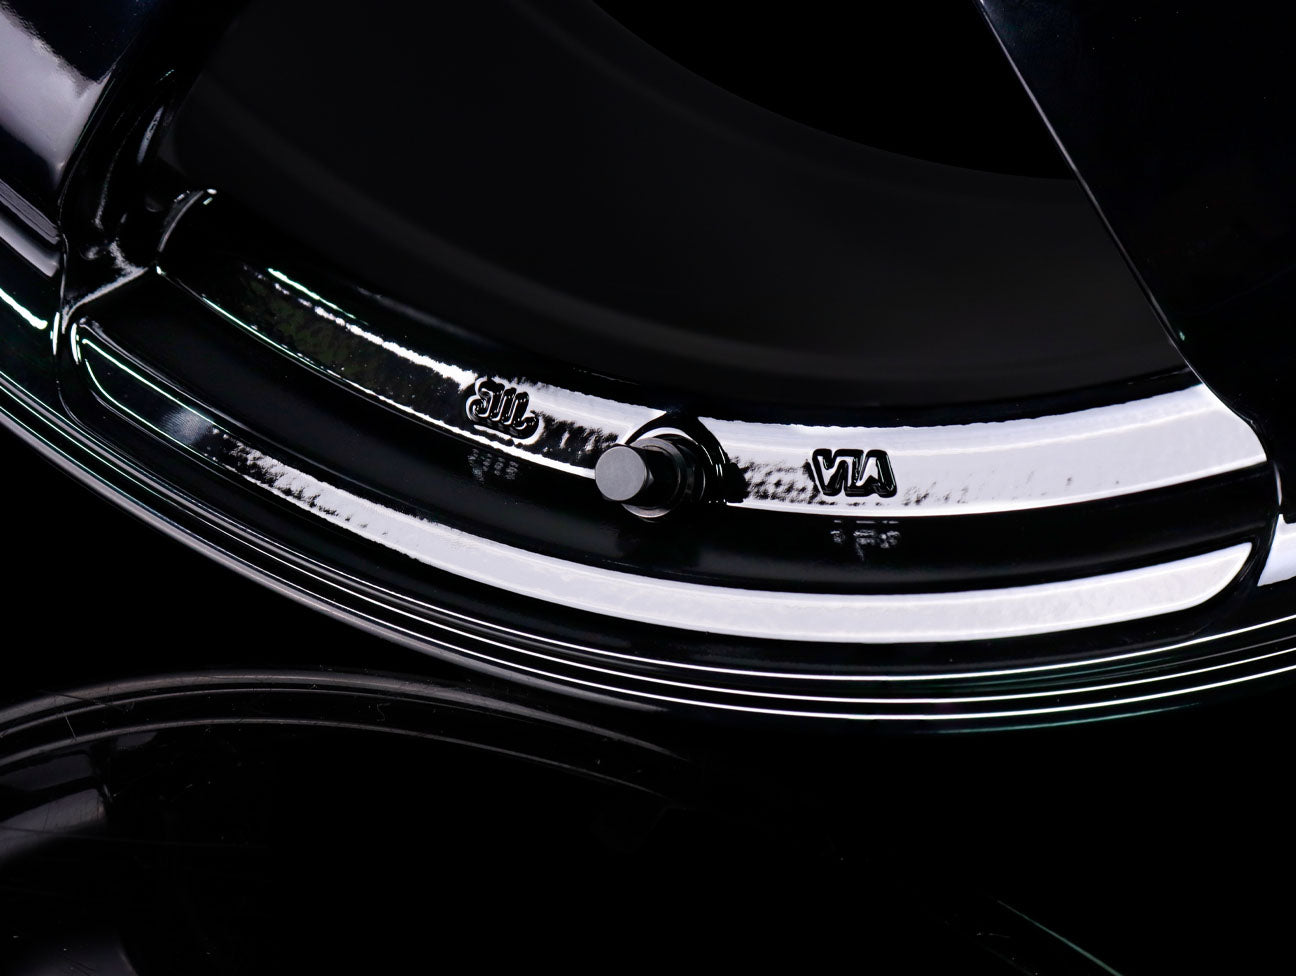 Advan Racing TC4 Wheels - Gloss Black / 18x9.5 / 5x114 / +35